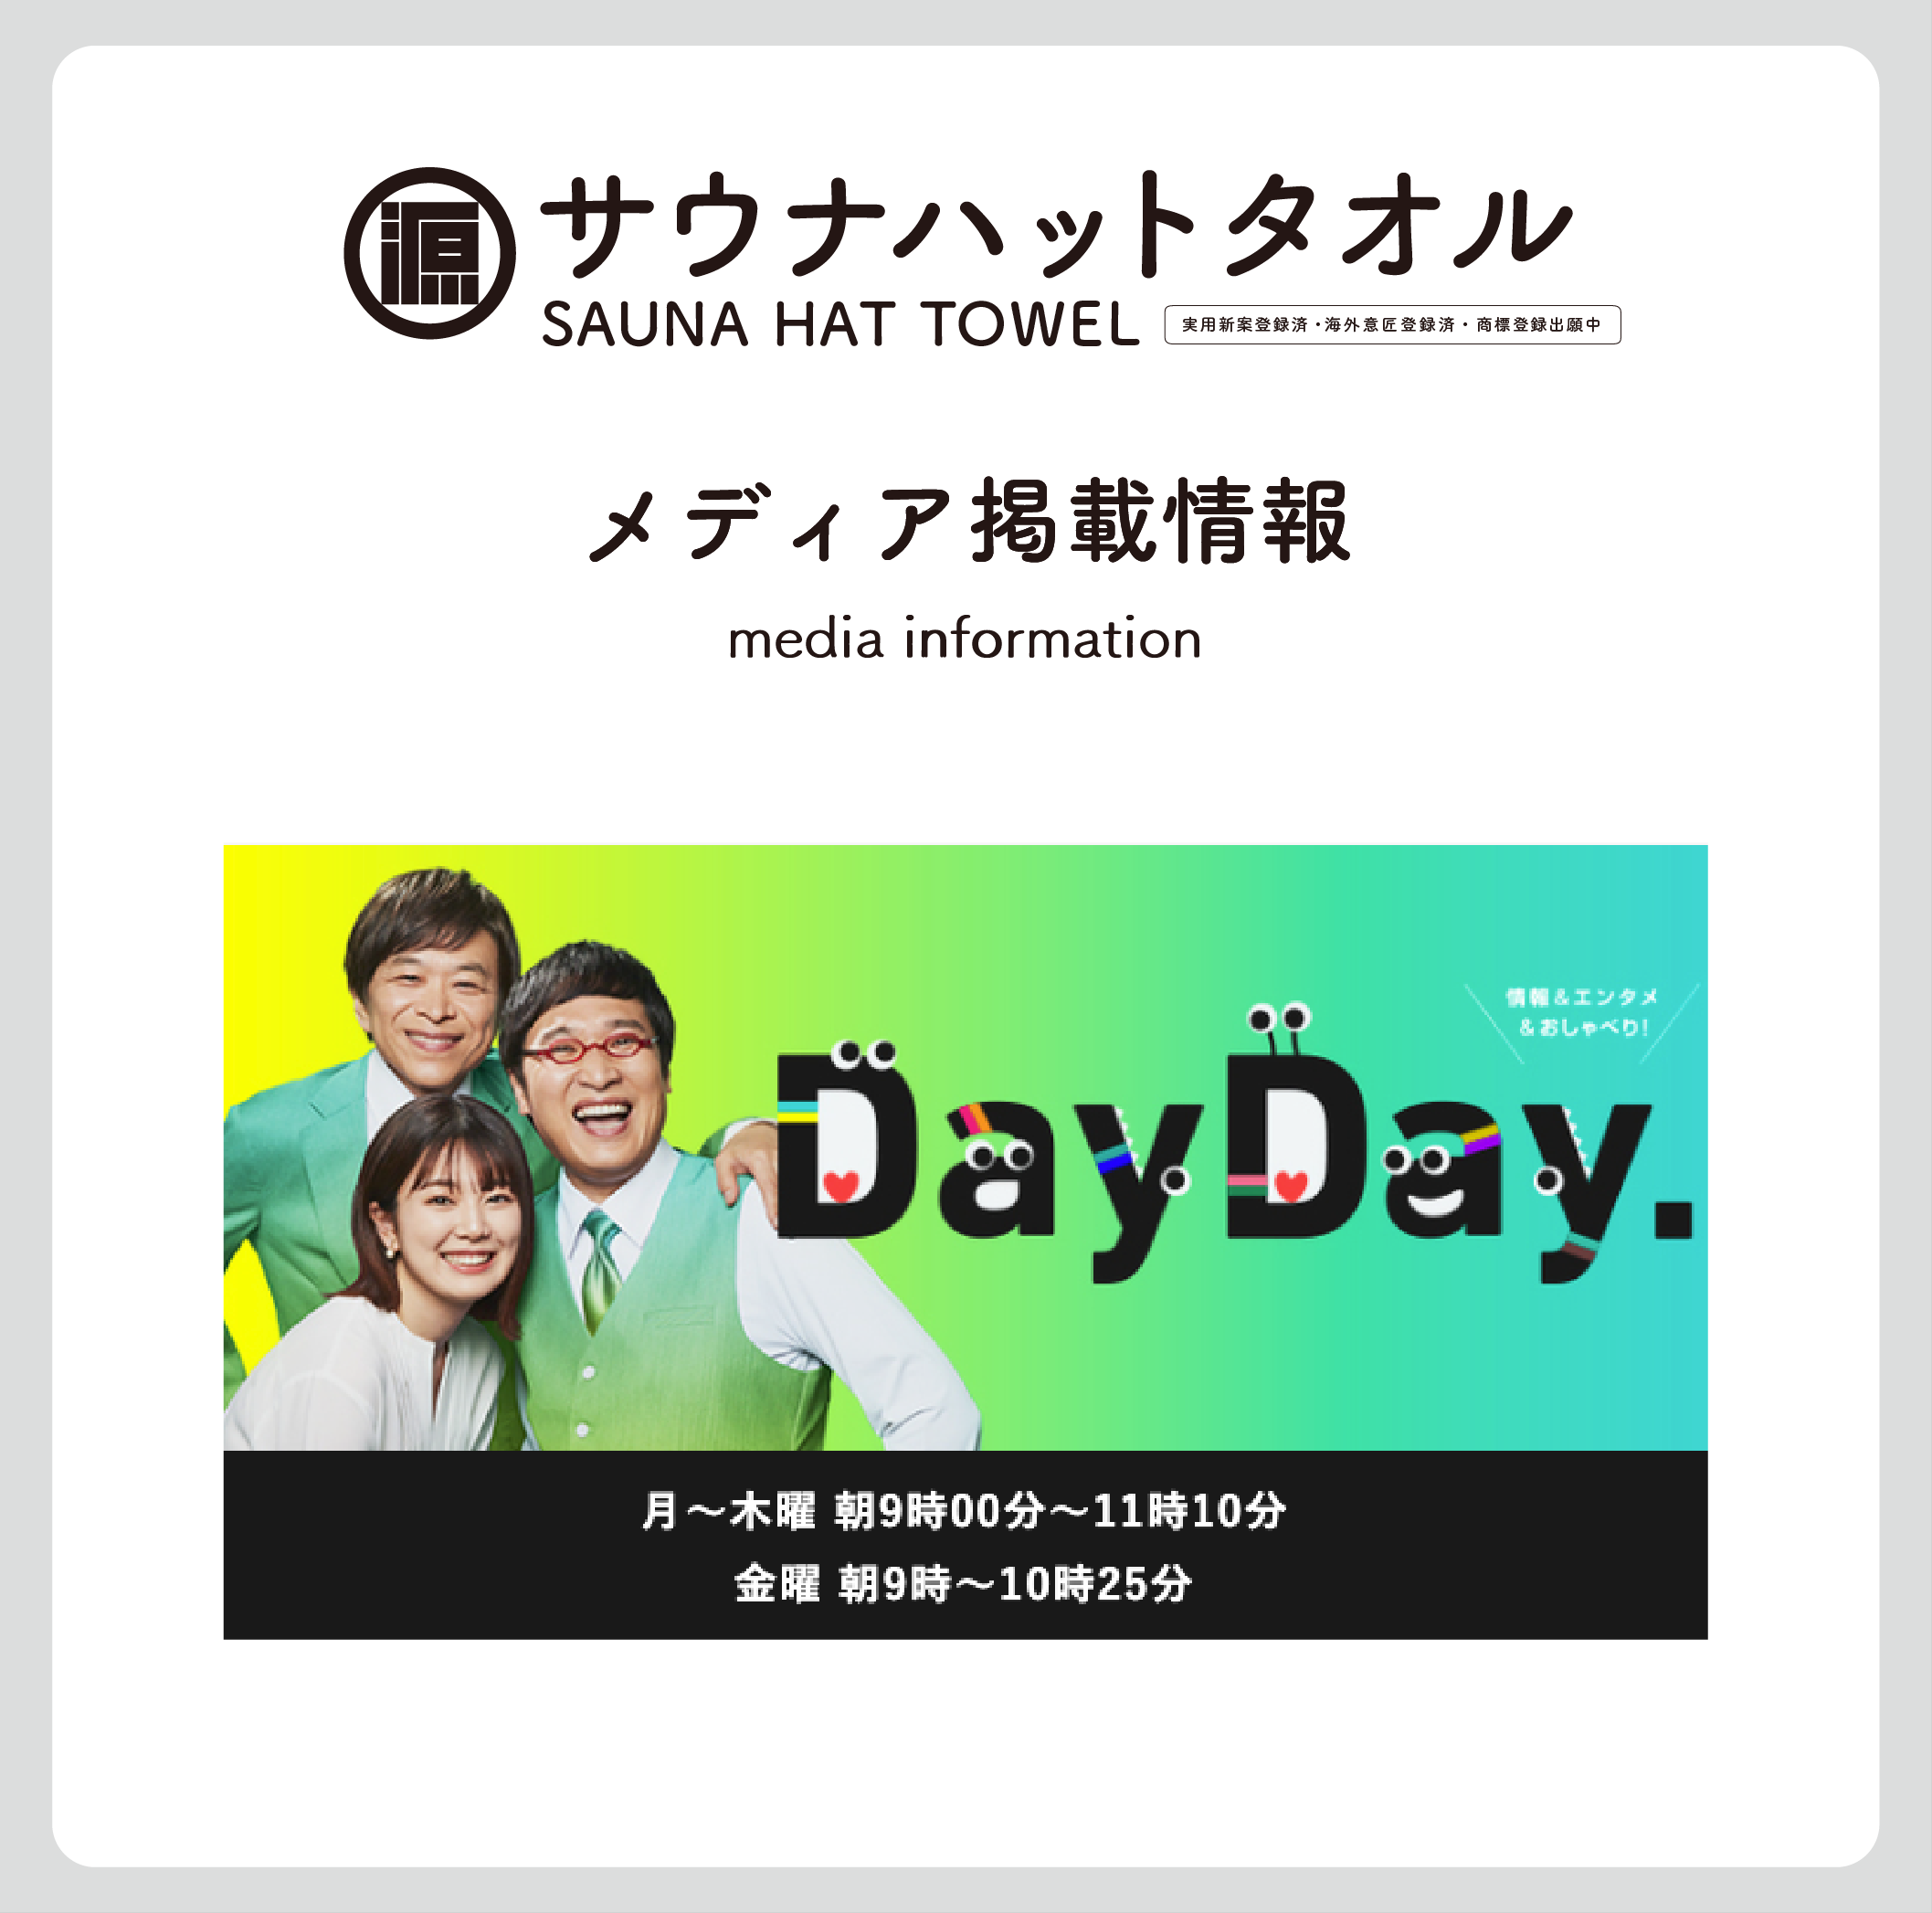 メディア掲載情報  |  日本テレビ DayDay 